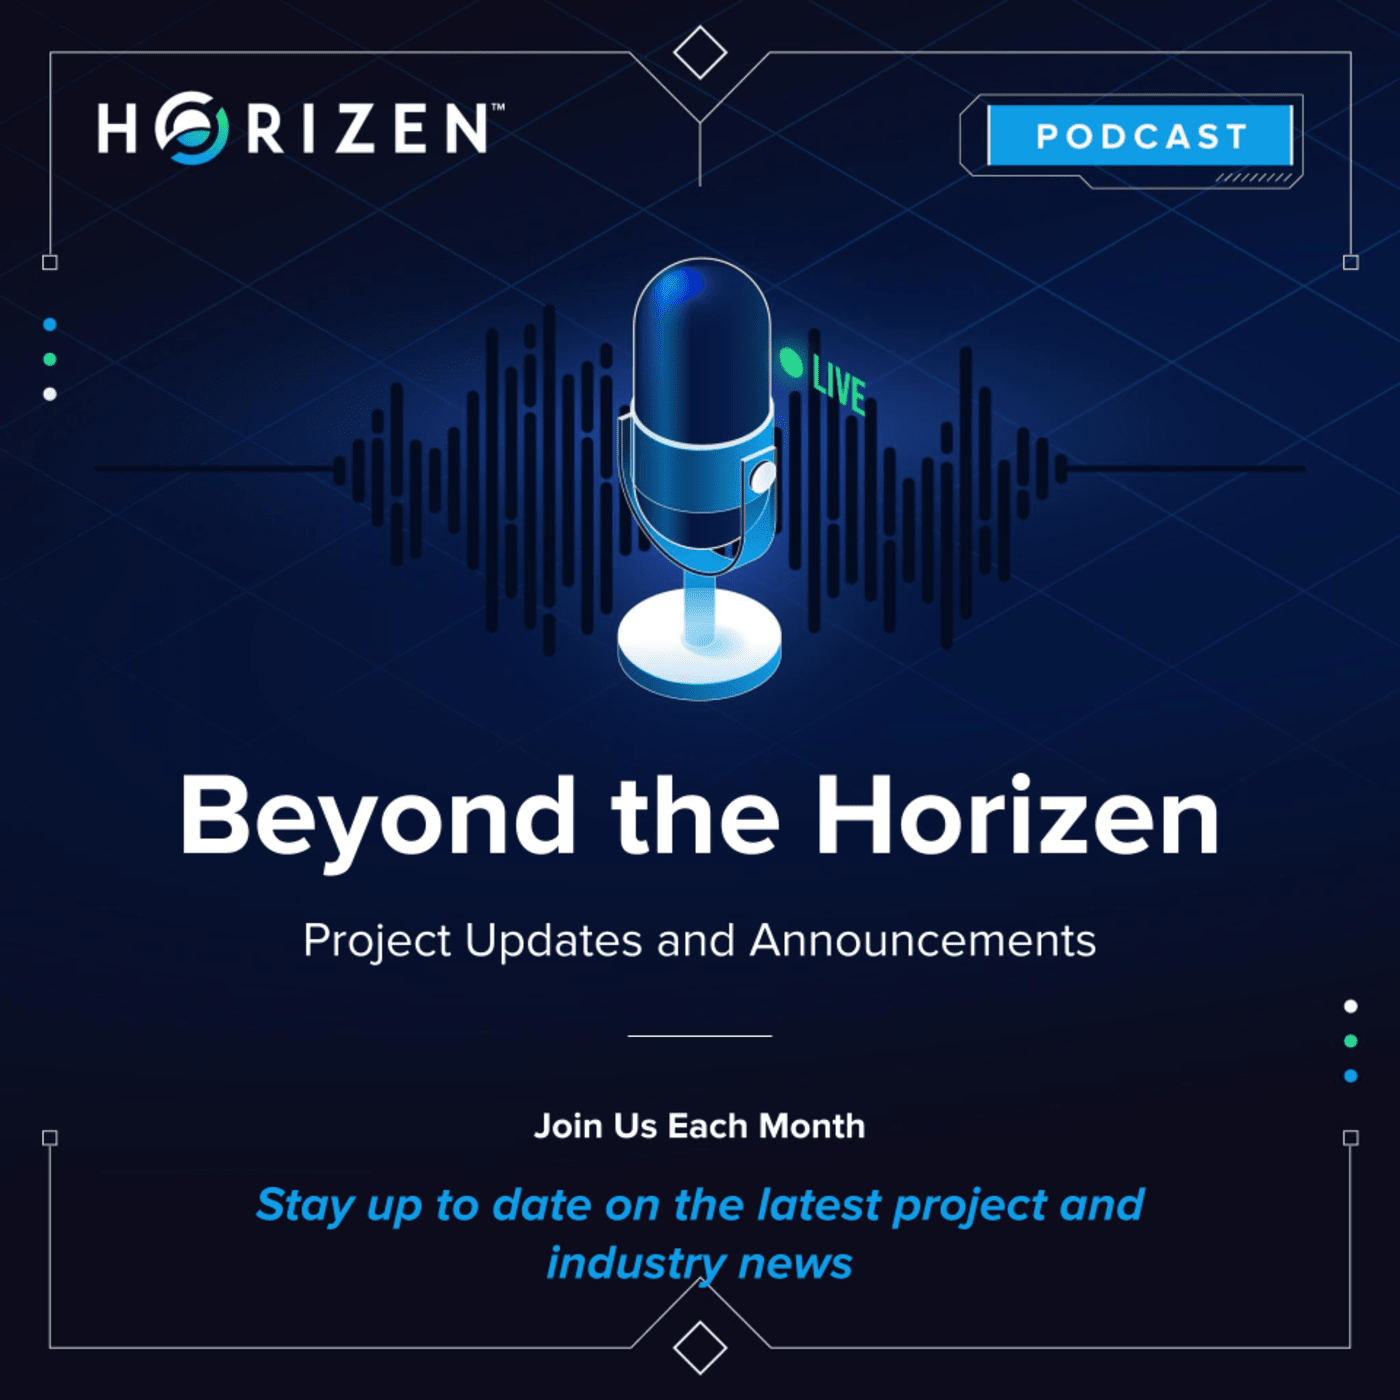 Artwork for podcast Beyond the Horizen